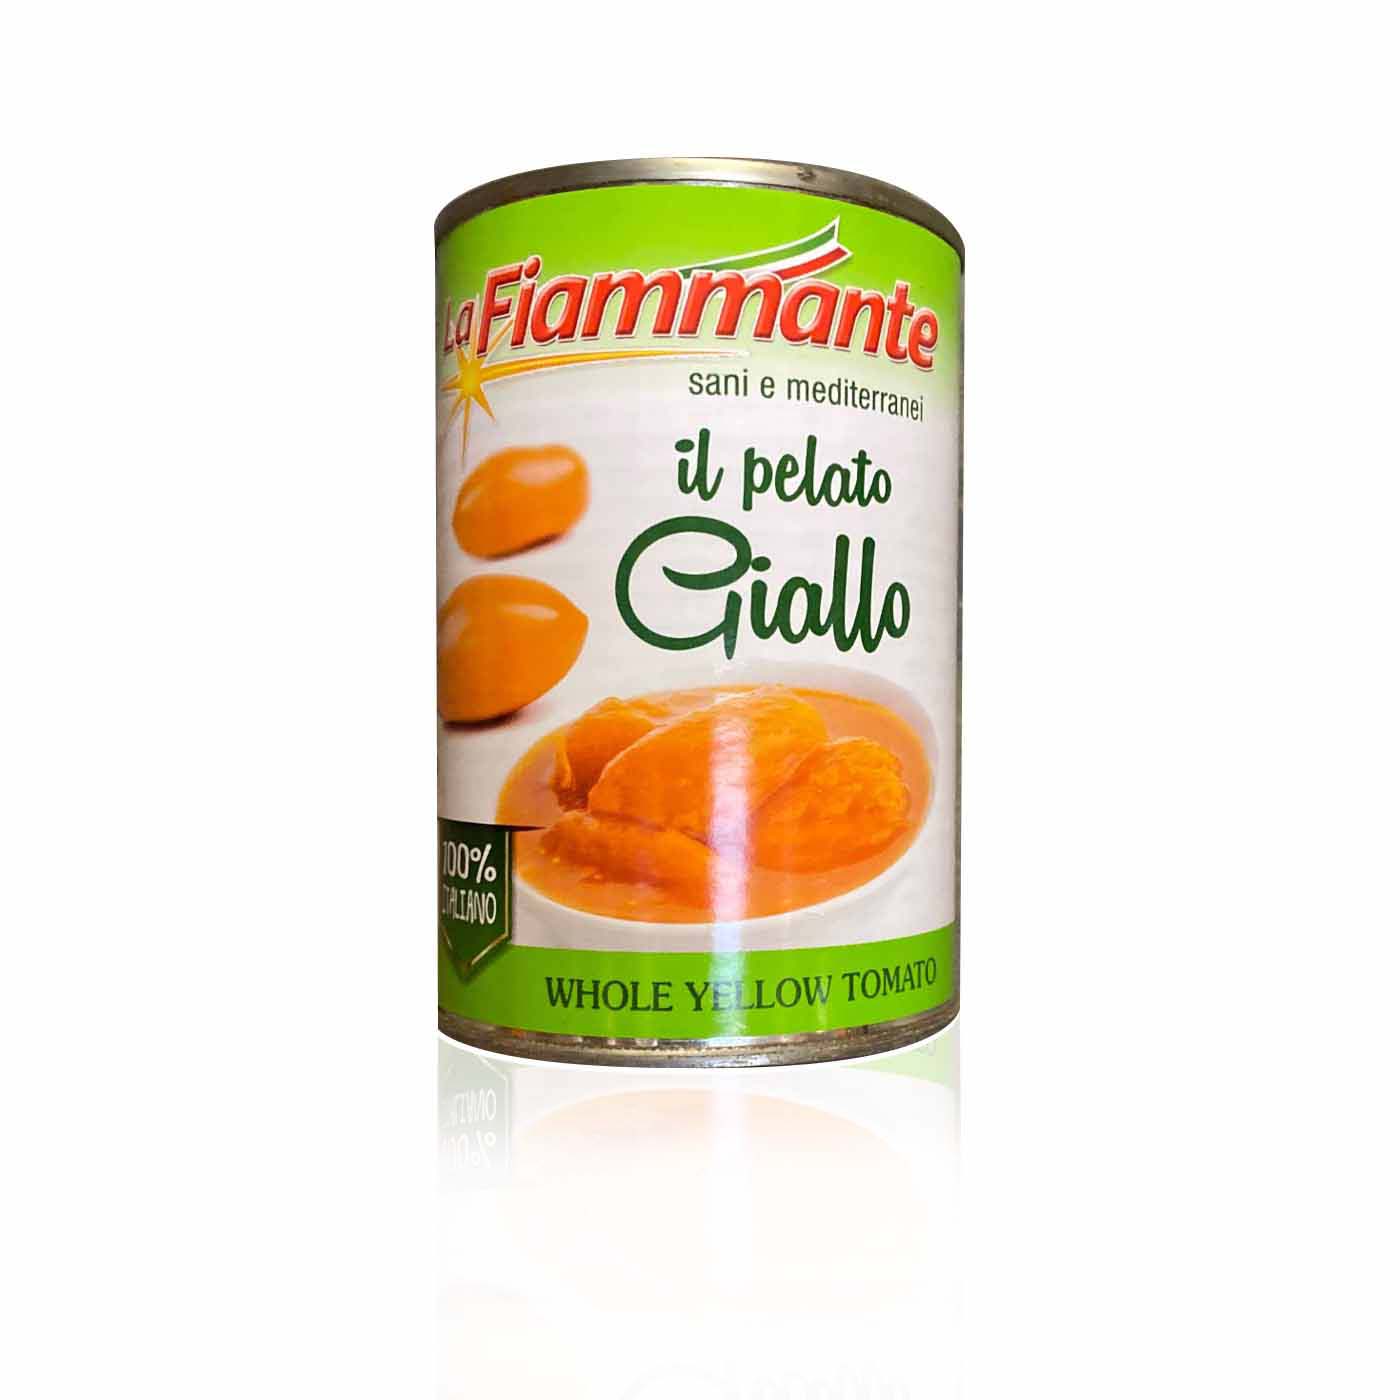 LA Fiammante - Il Pelato Giallo - 0,4kg - italienisch - einkaufen.de